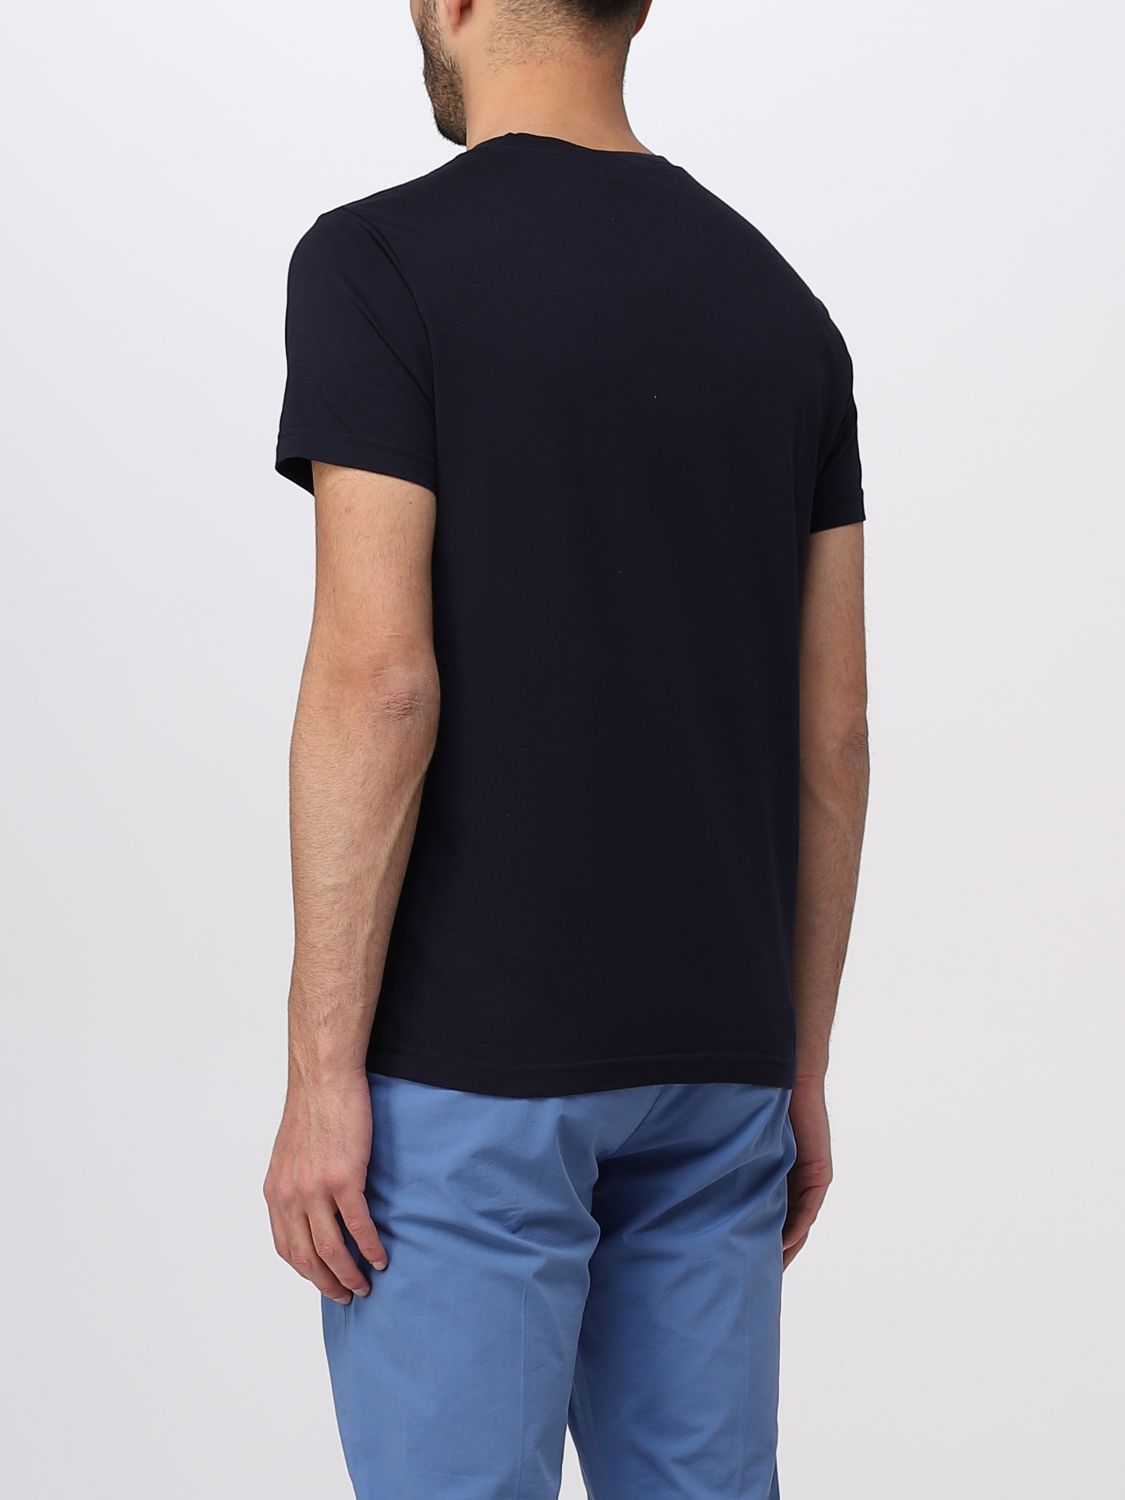 ASPESI: t-shirt for man - Blue | Aspesi t-shirt AYT6M144 online on ...